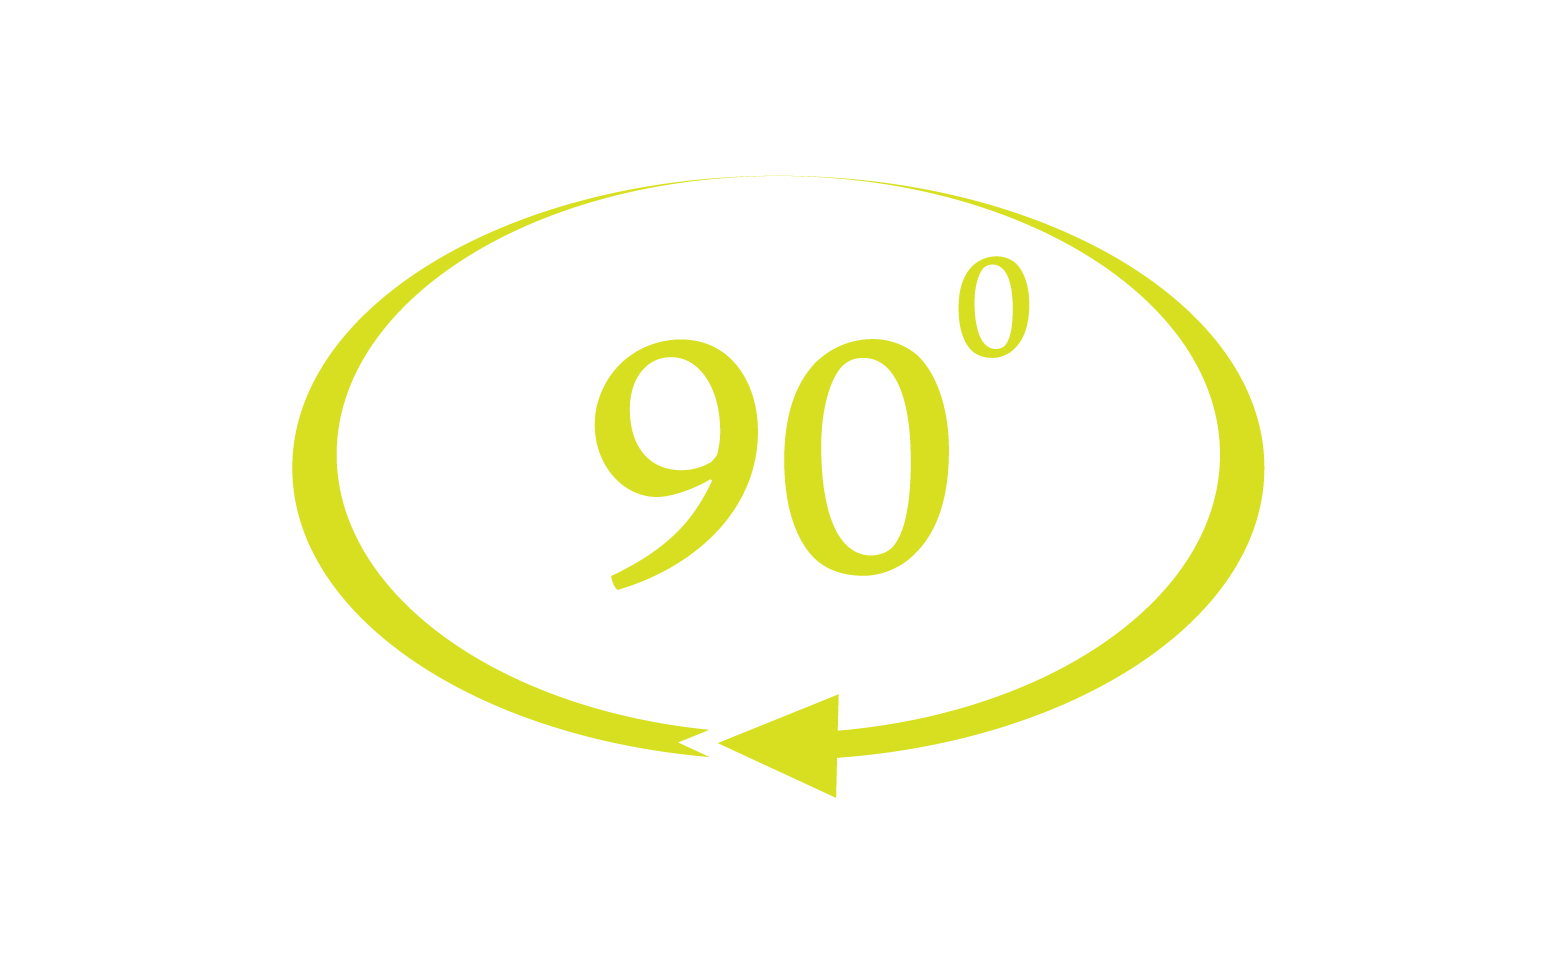 90 degree angle rotation icon symbol logo v10